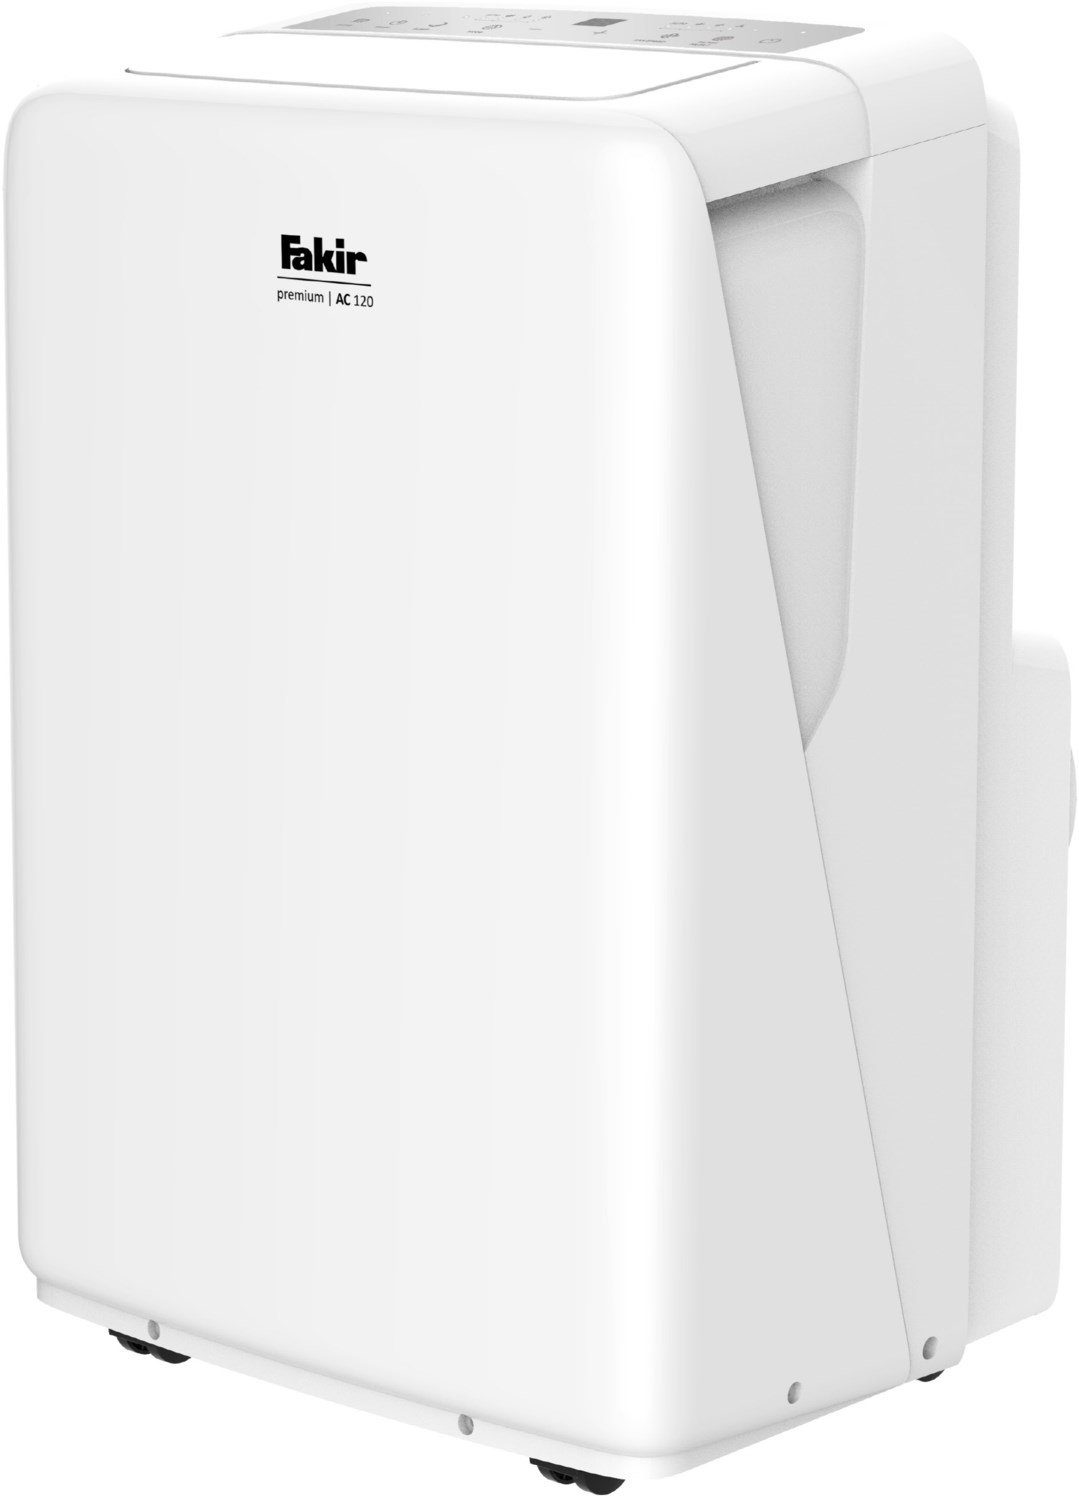 FAKIR Klimagerät Premium AC - Klimagerät - weiß 120